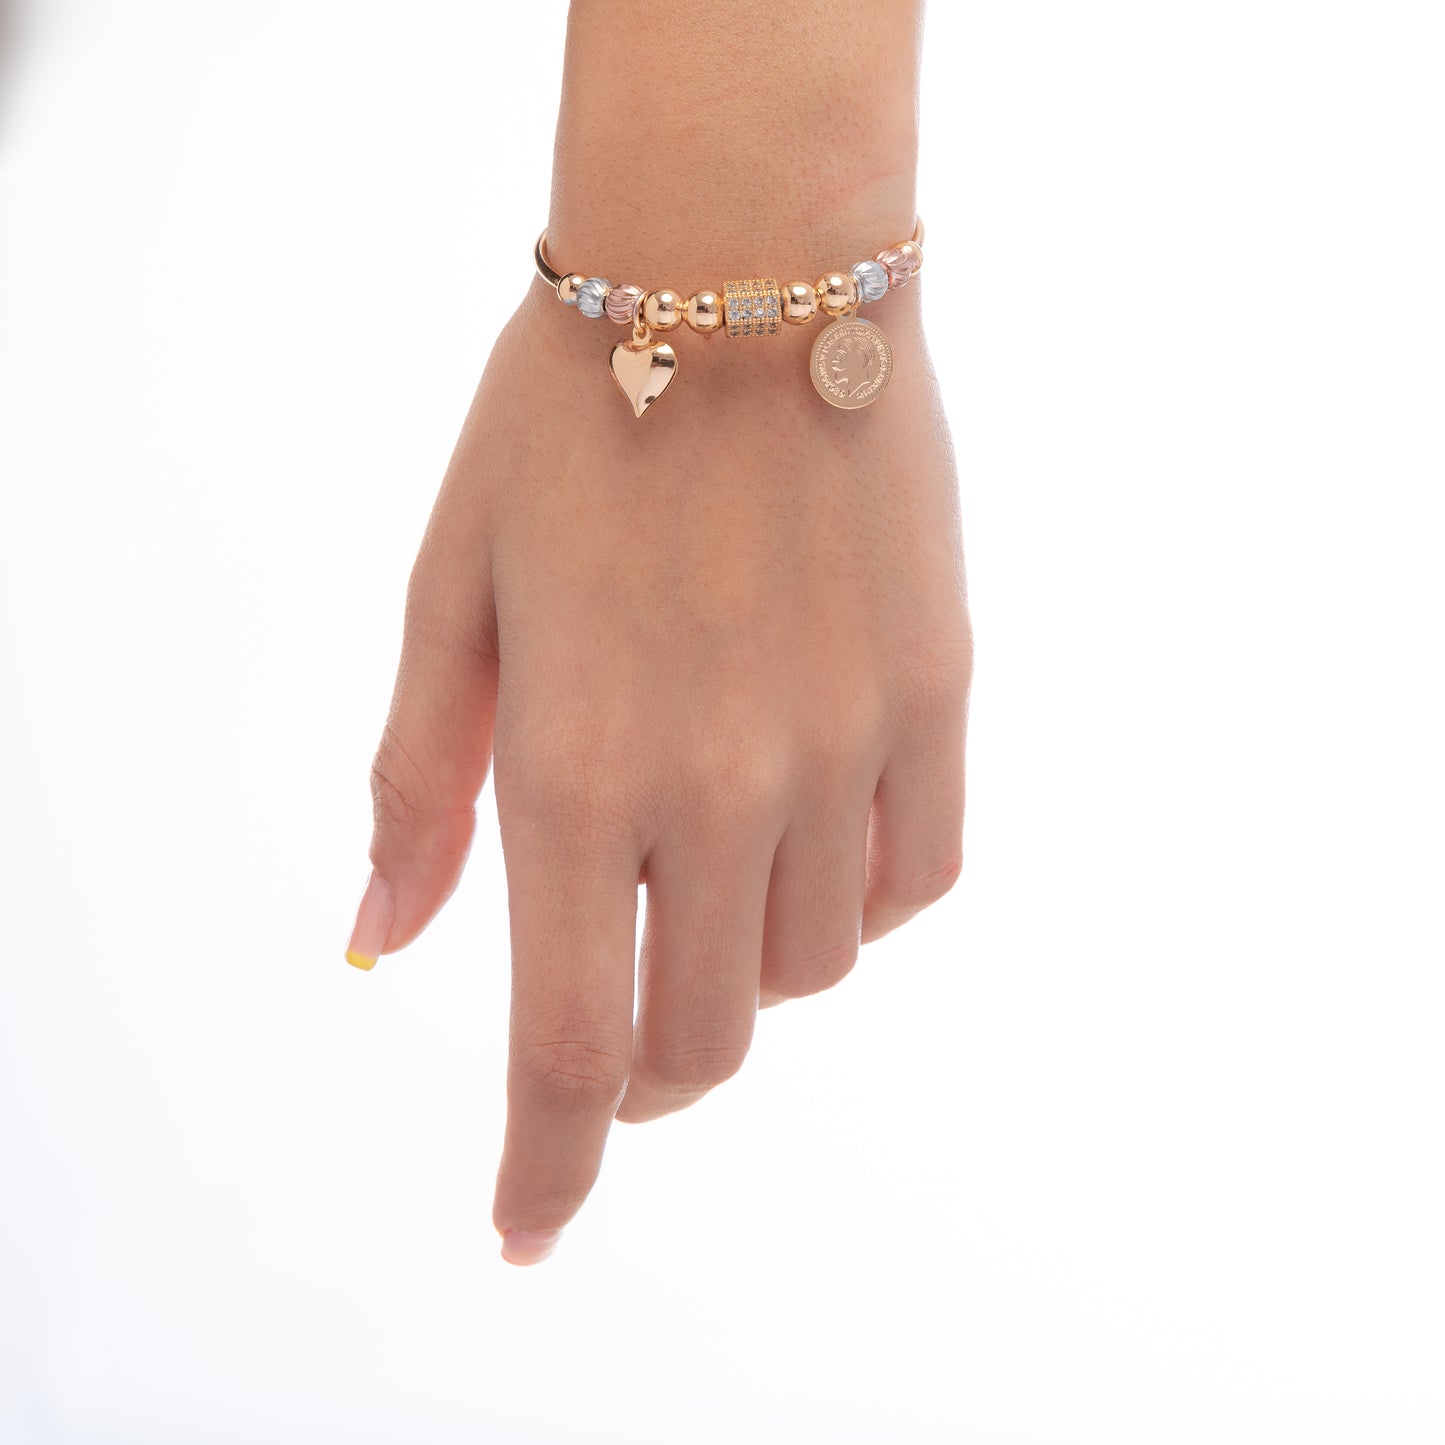 CDBR187- Gold plated Bracelet